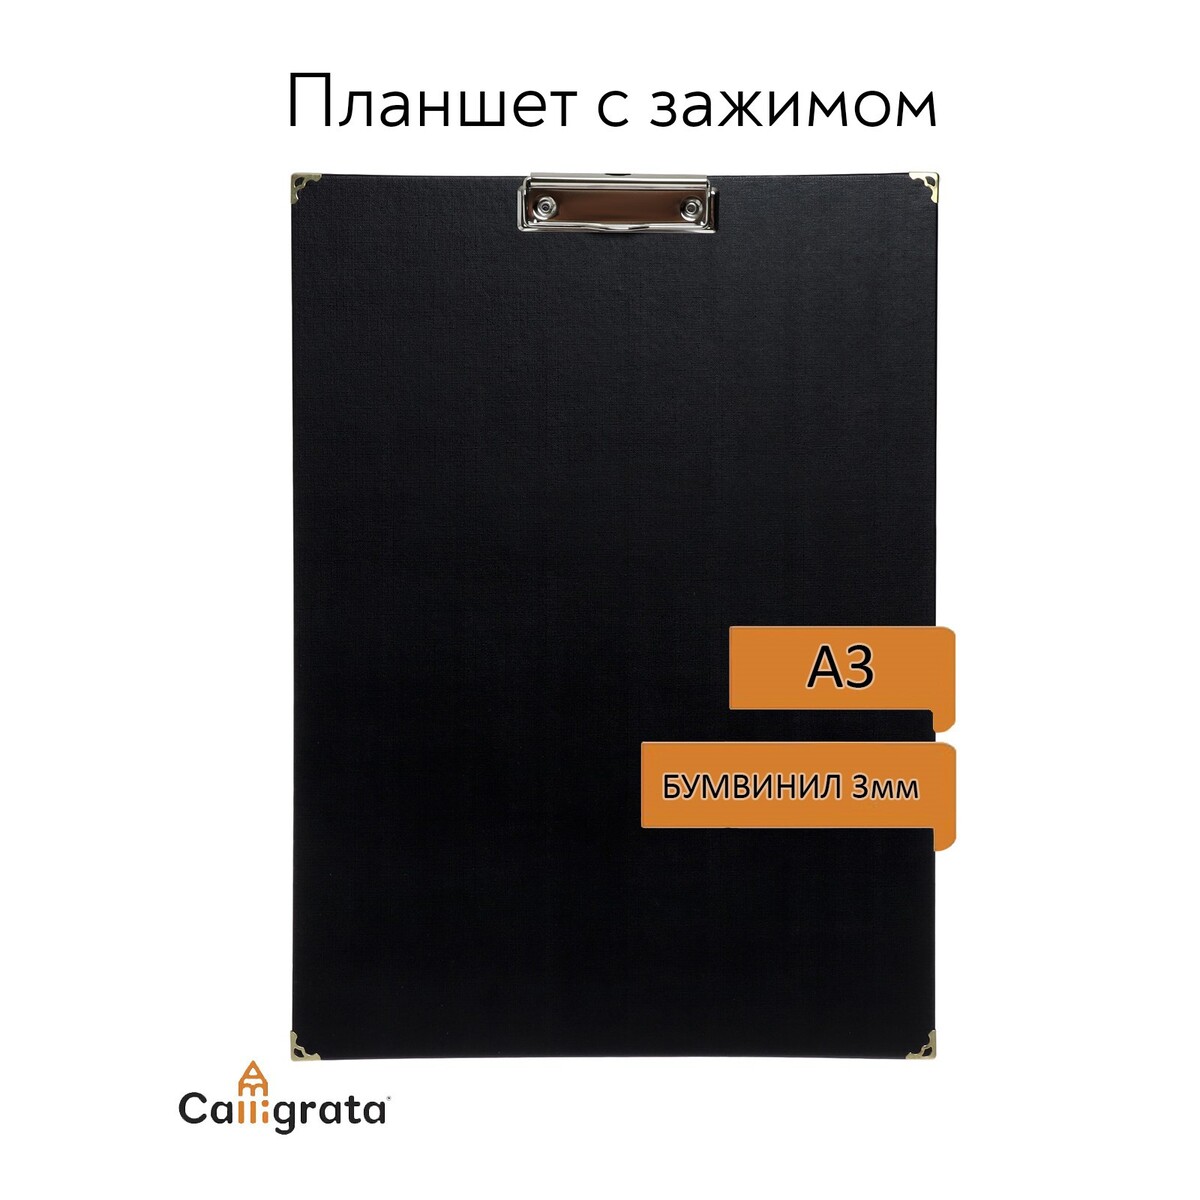 Планшет с зажимом а3, 420 х 320 мм, покрыт высококачественным бумвинилом, с металлическими уголками, черный (клипборд) планшет с зажимом формат а4 3мм горизонтальный